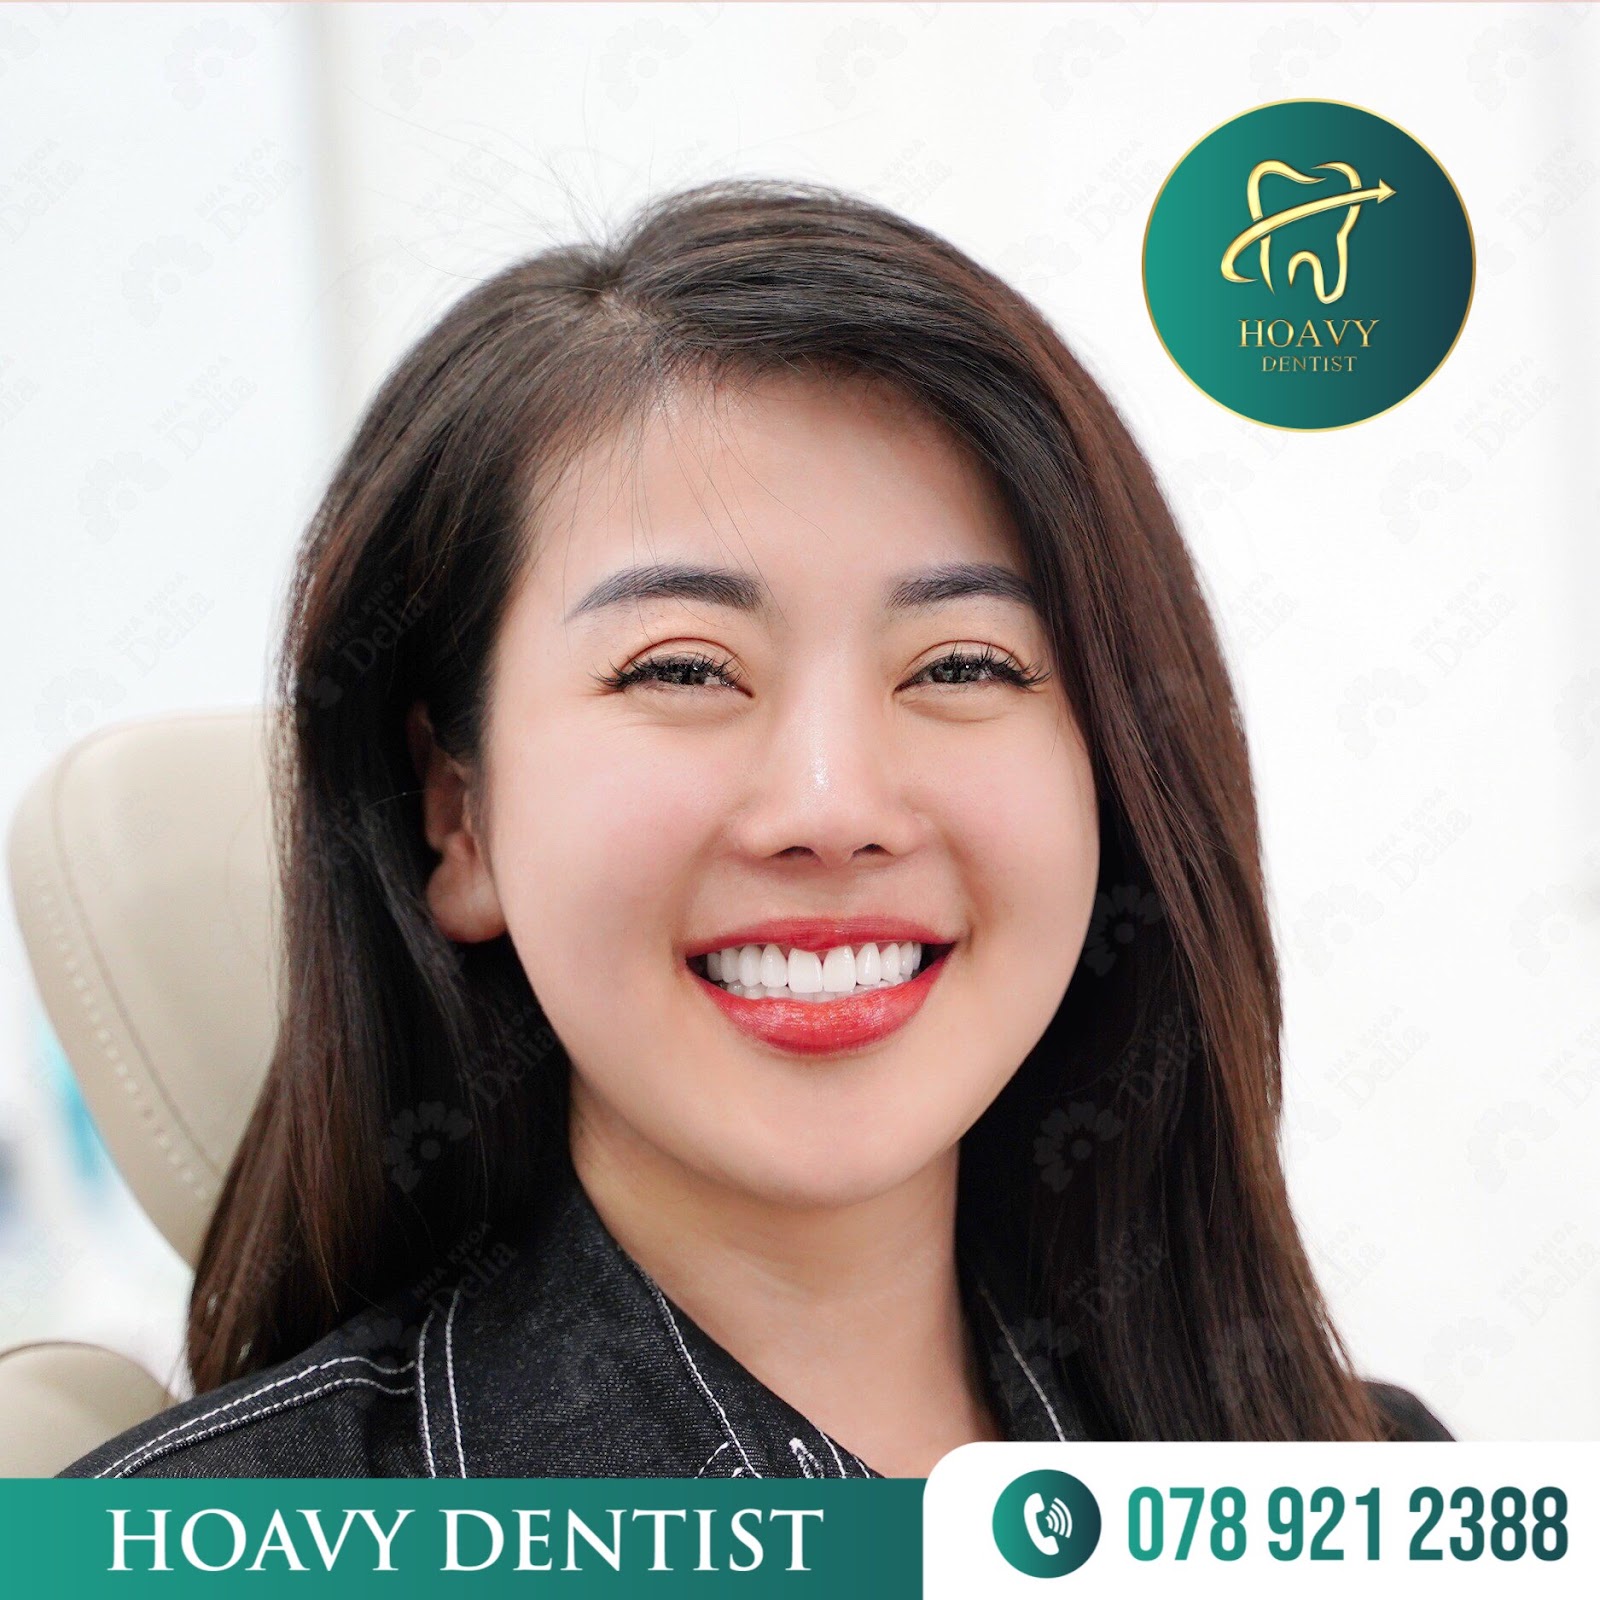 Hoavy Dentist có dịch vụ bọc răng sứ chữa cười hở lợi uy tín